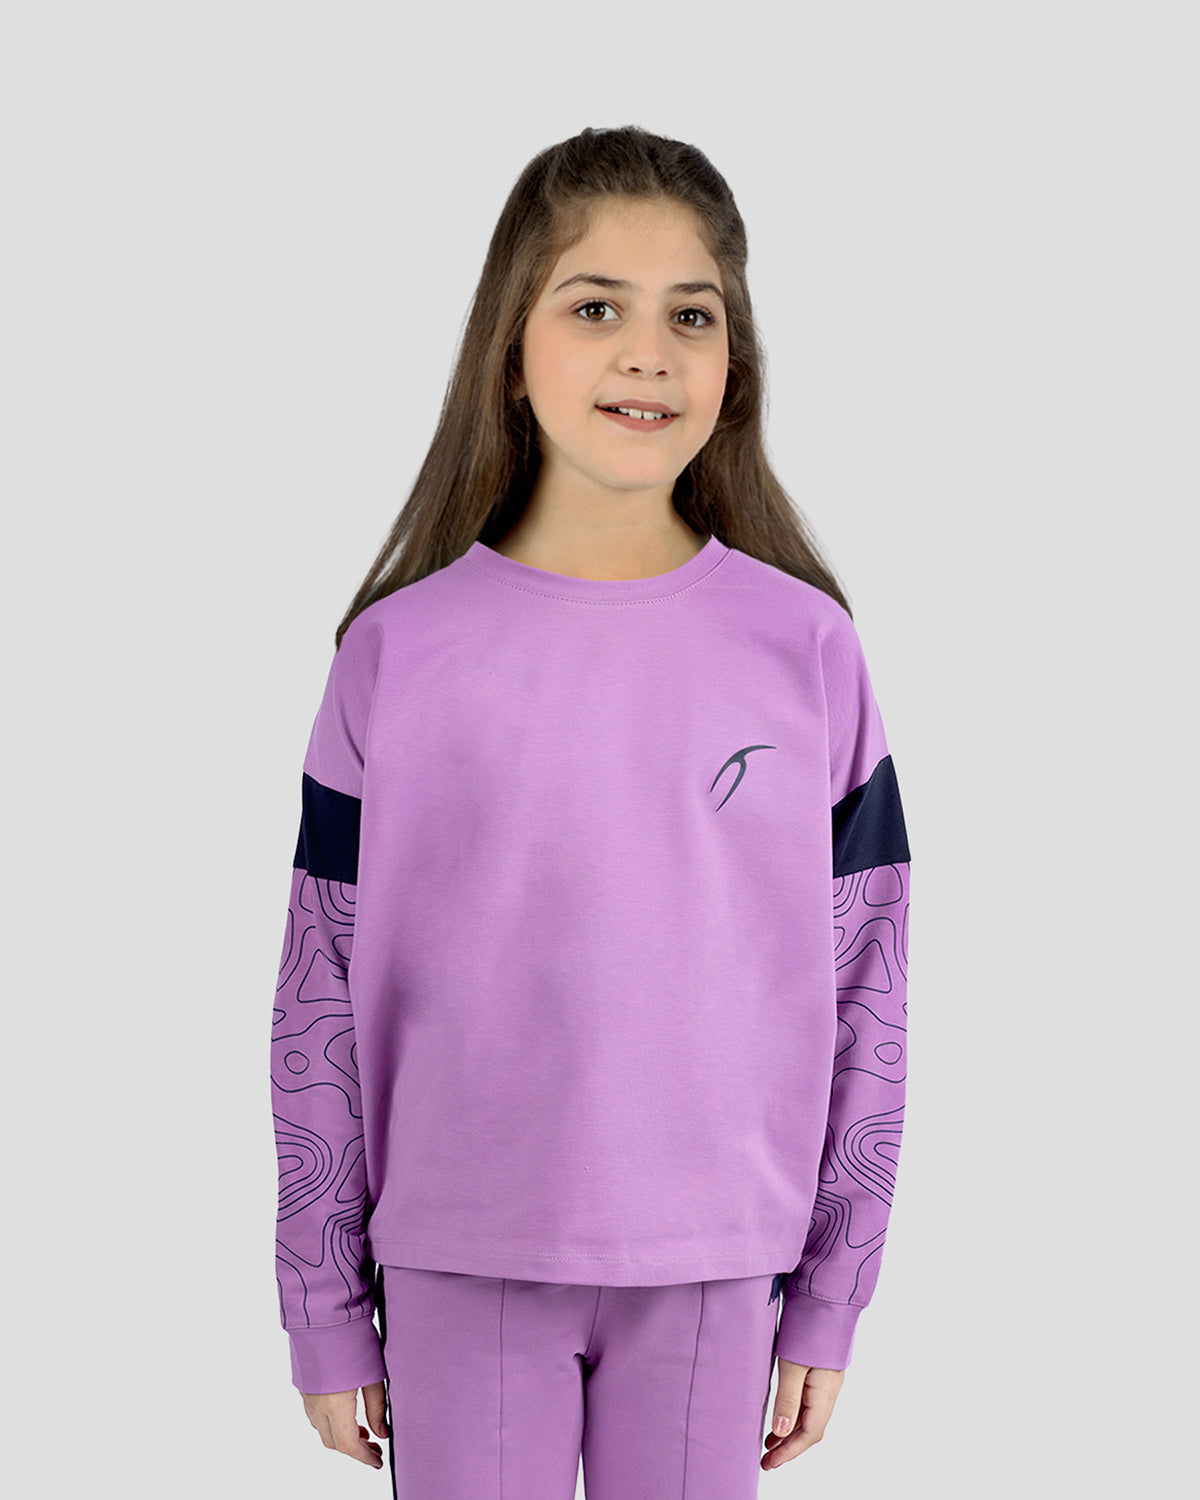 Photo by ð—”ð—§ð—¨ð— SPORTSWEAR Â® on December 20, 2022. May be an image of 1 girl wears violet sweatshirt with atum emblem.